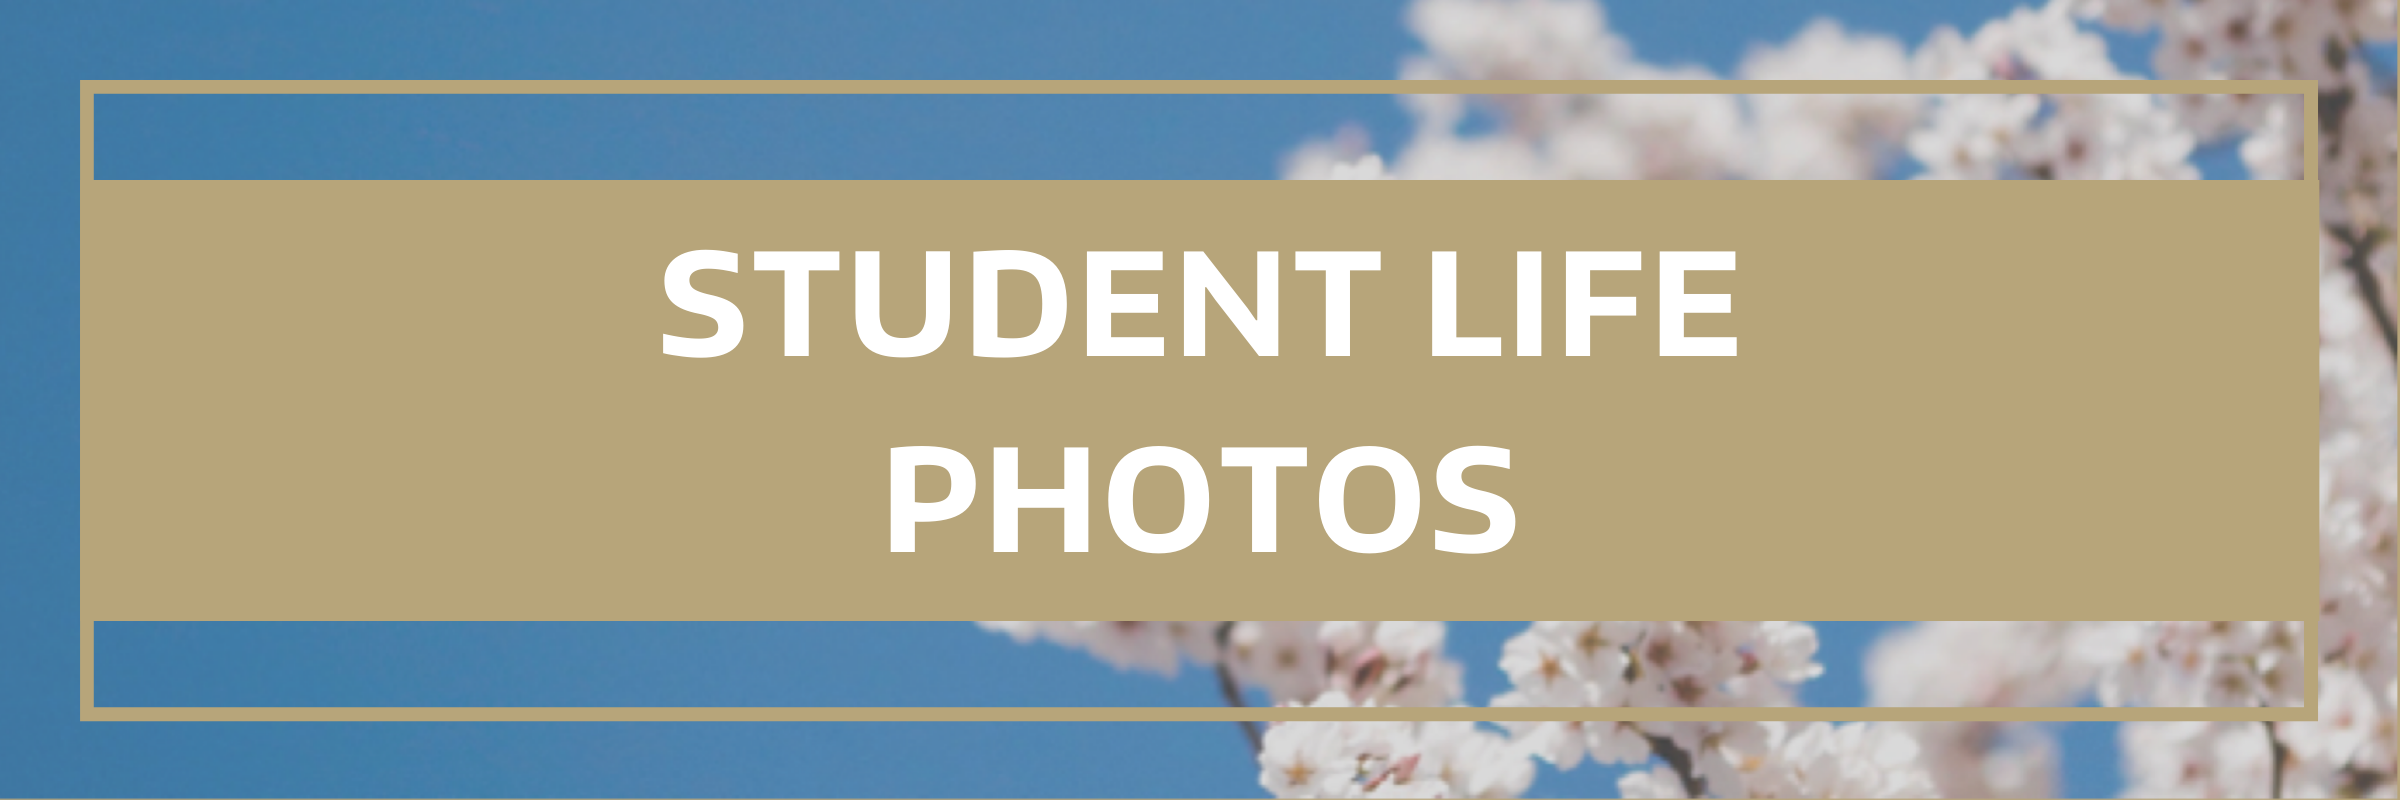 Student Life Photos